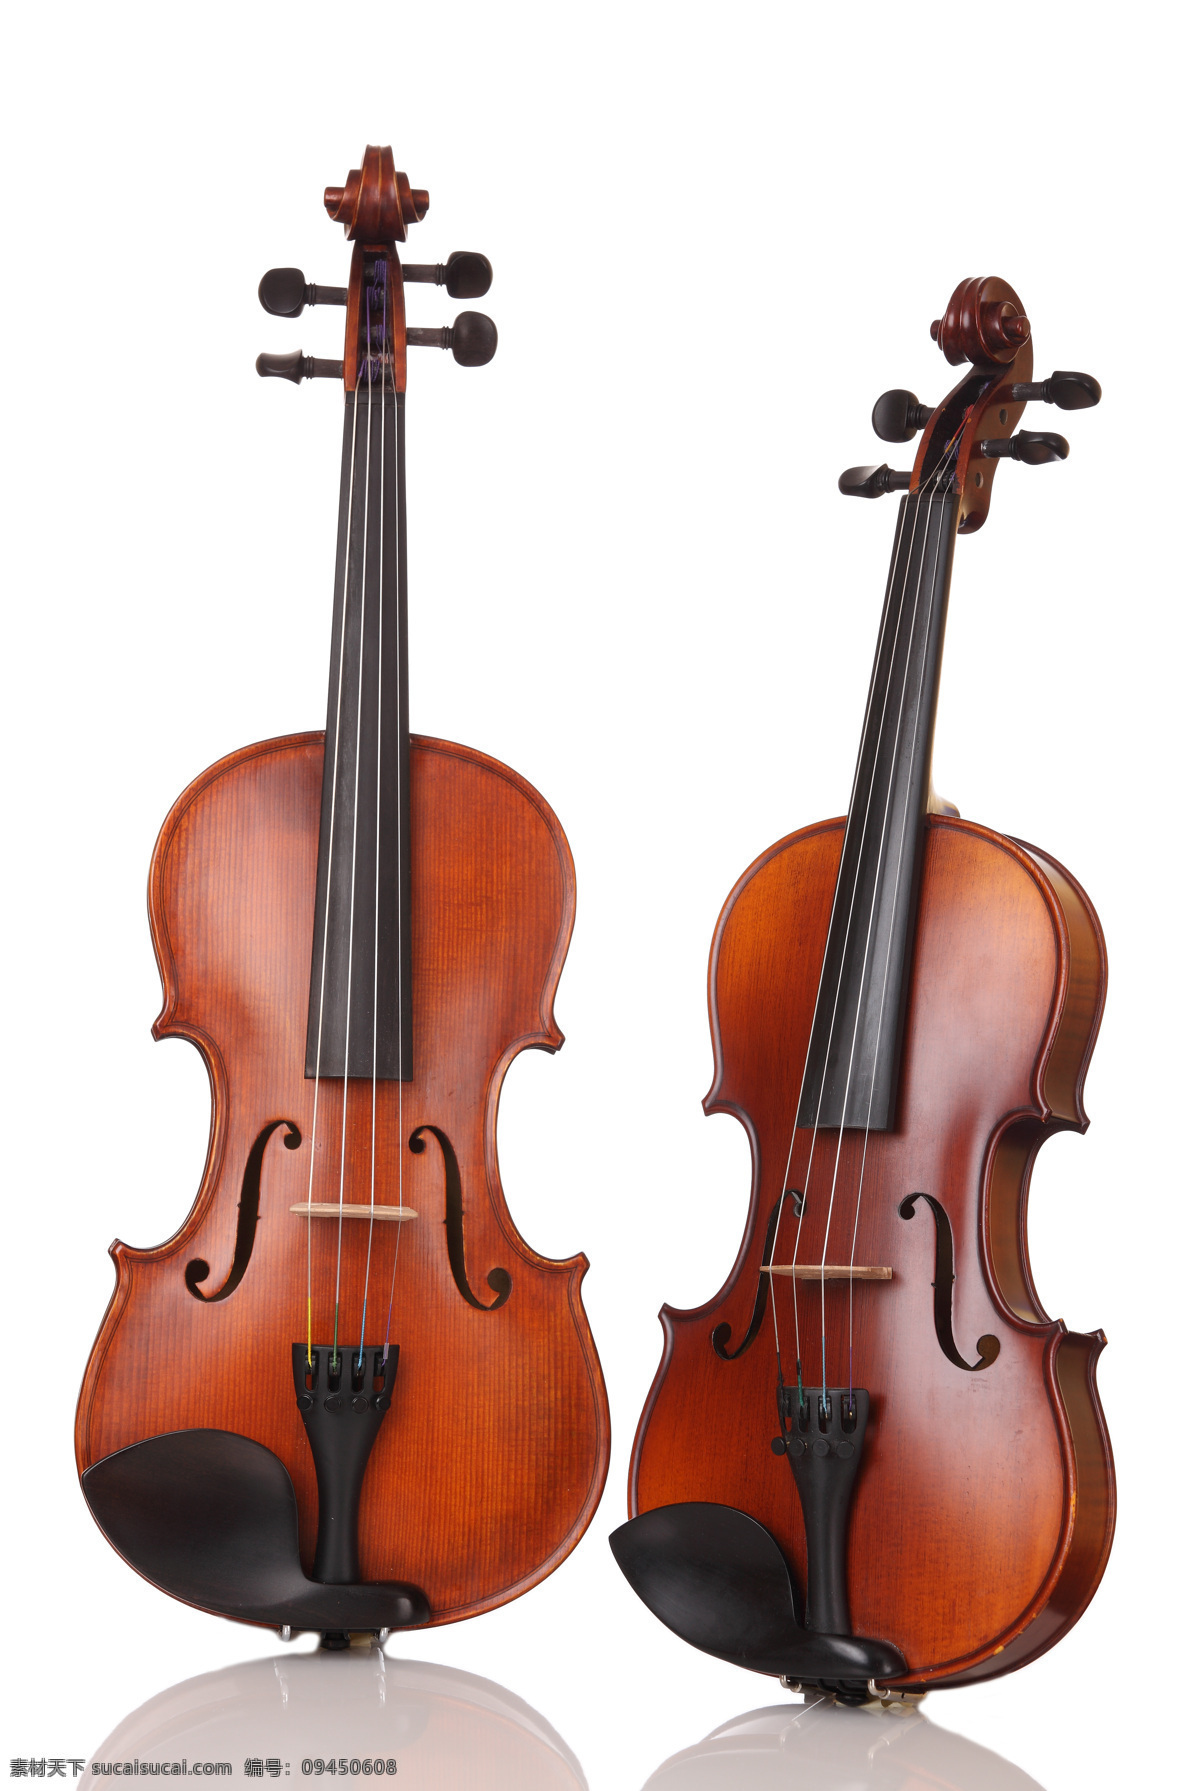 小提琴 乐器 音乐 乐器演奏 音乐教育 舞蹈音乐 文化艺术